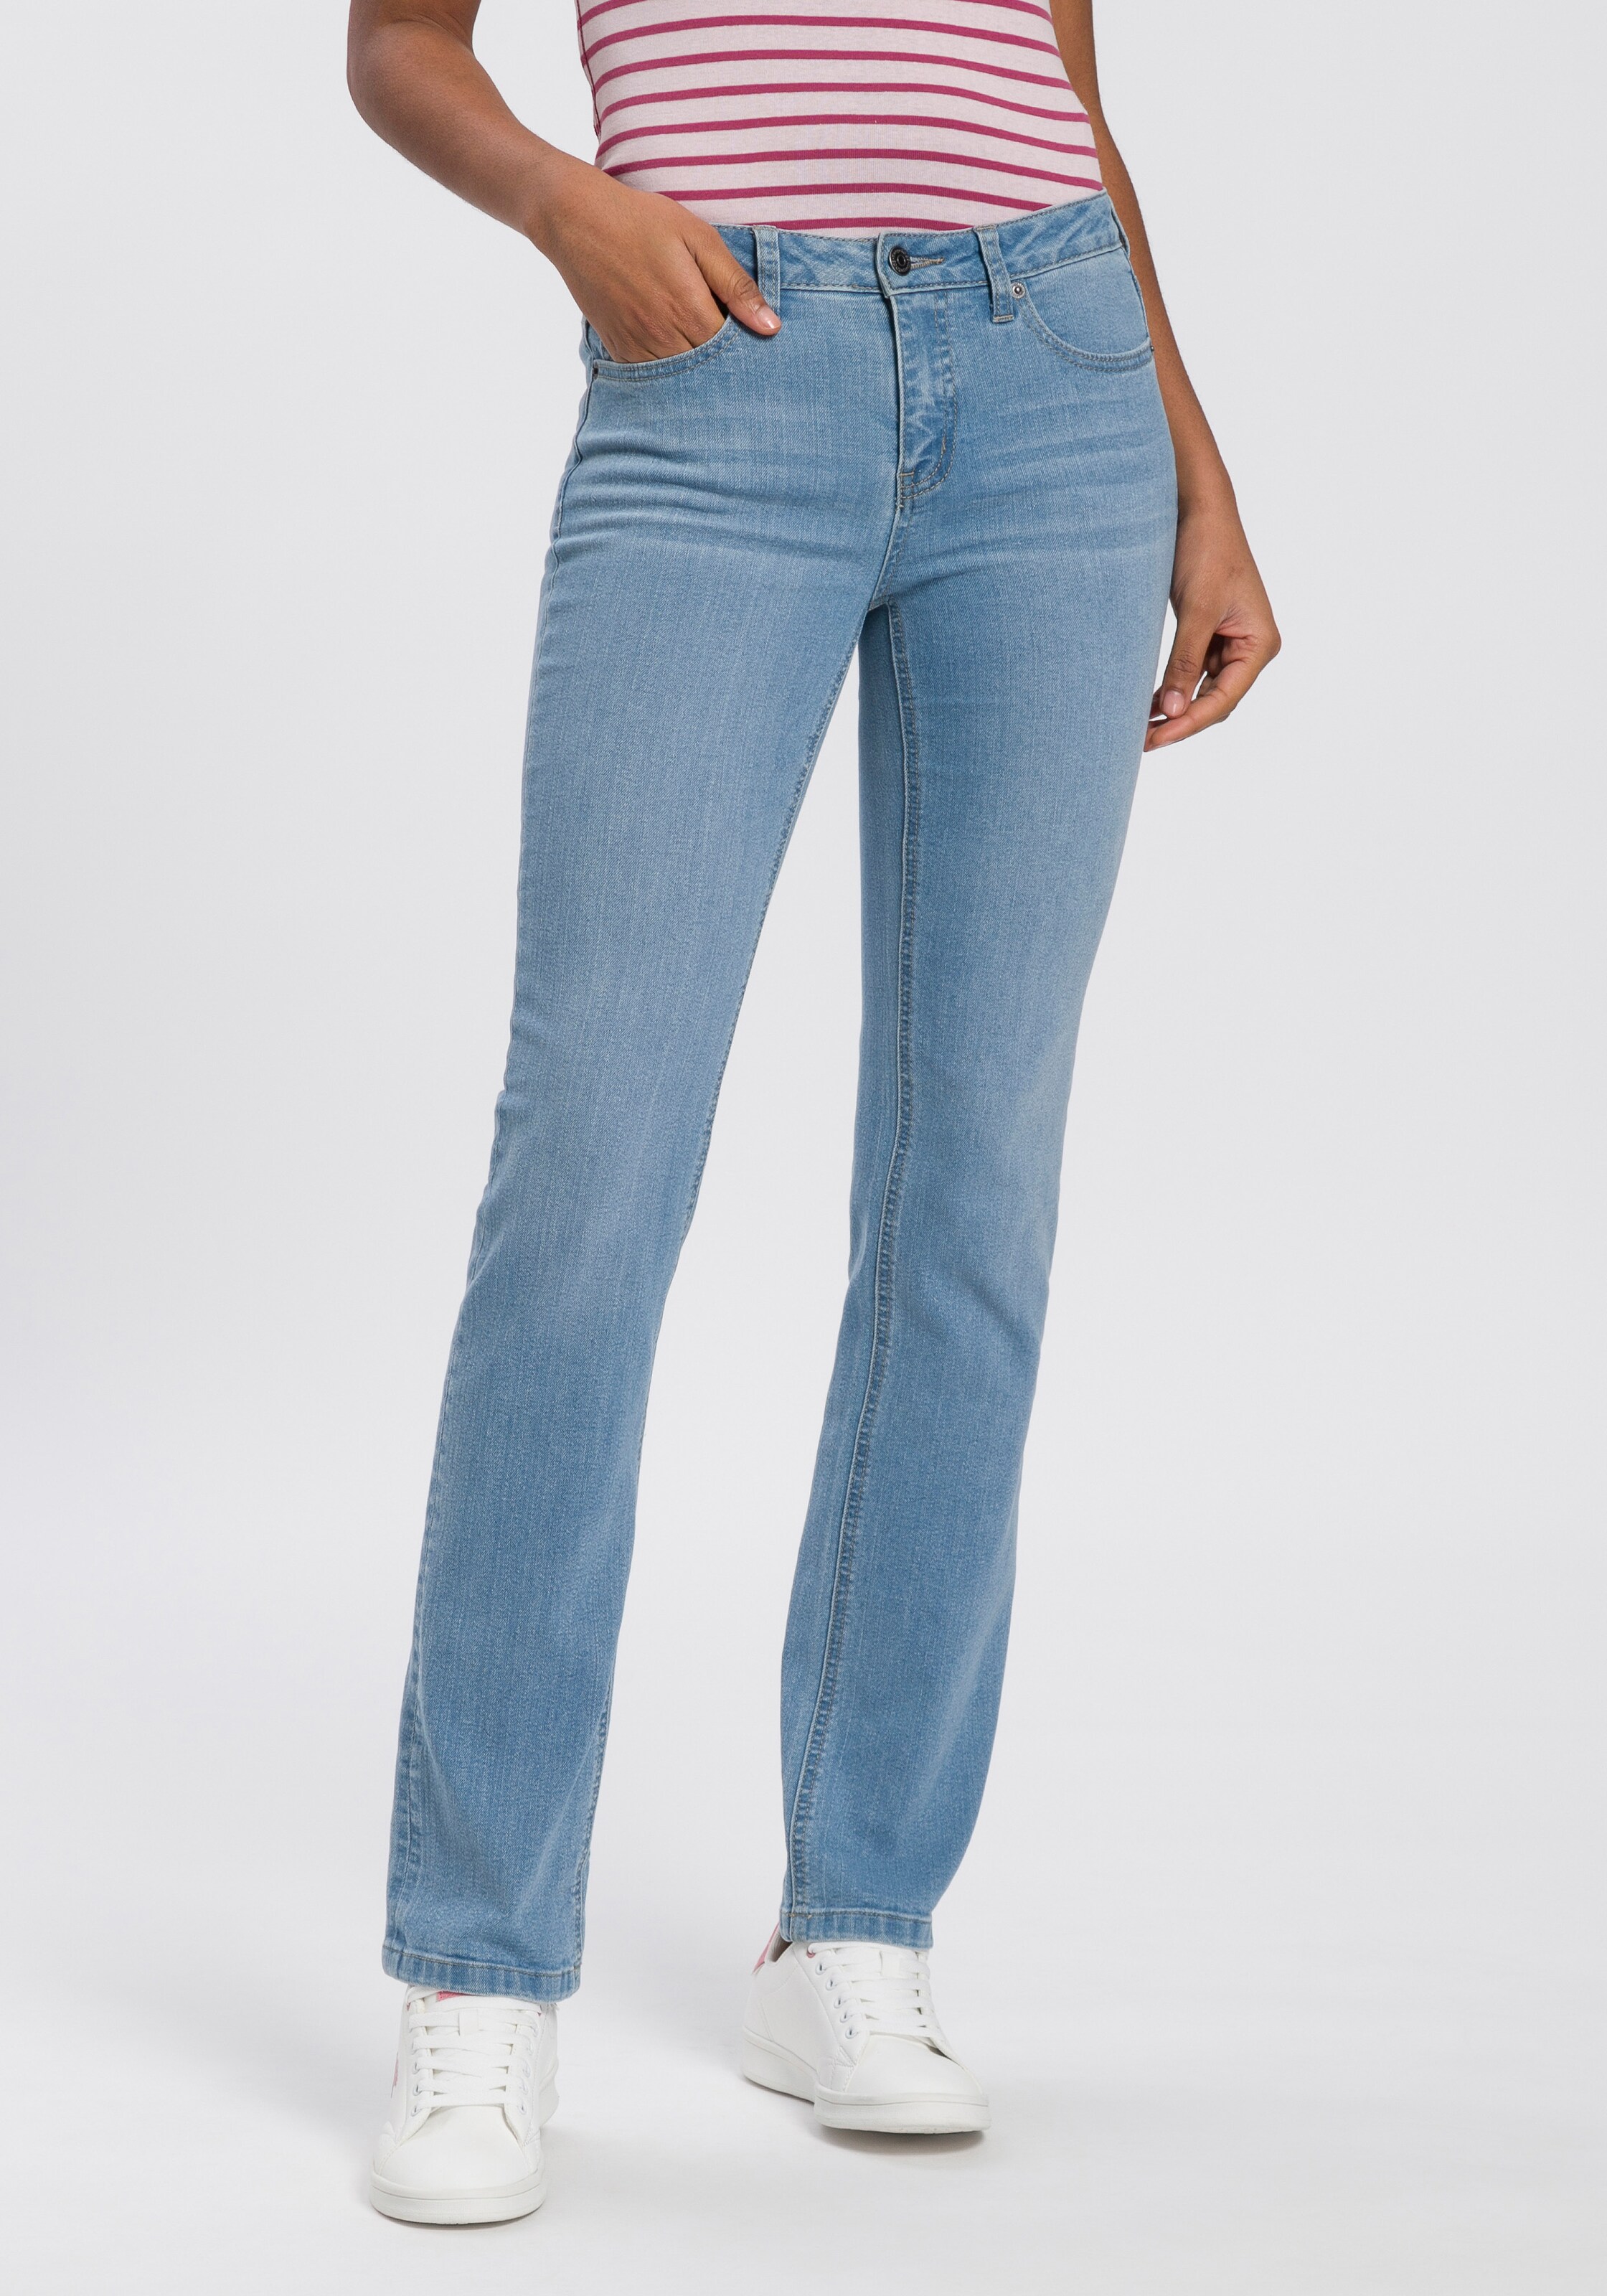 Frauen Jeans KangaROOS Jeans in Blau - PJ45220